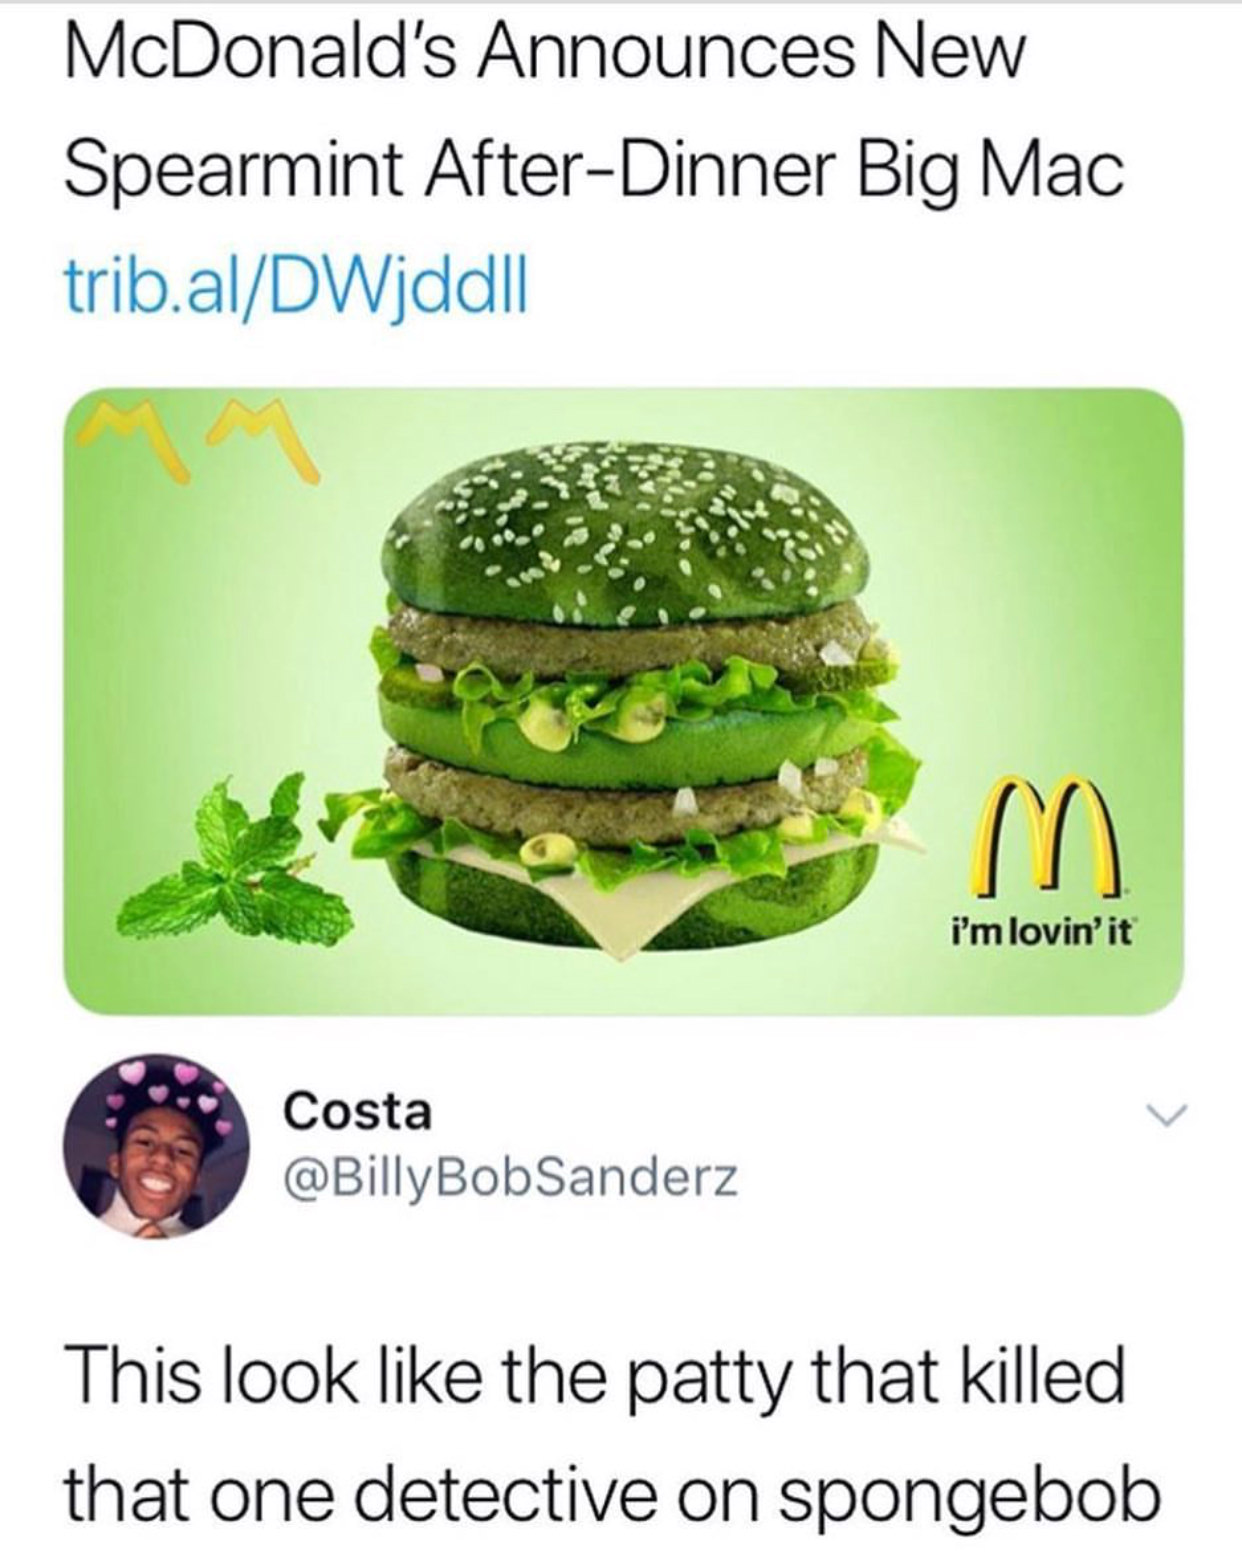 mcdonalds spearmint big mac - McDonald's Announces New Spearmint AfterDinner Big Mac trib.alDWjddll i'm lovin'it Costa Bob Sanderz This look the patty that killed that one detective on spongebob